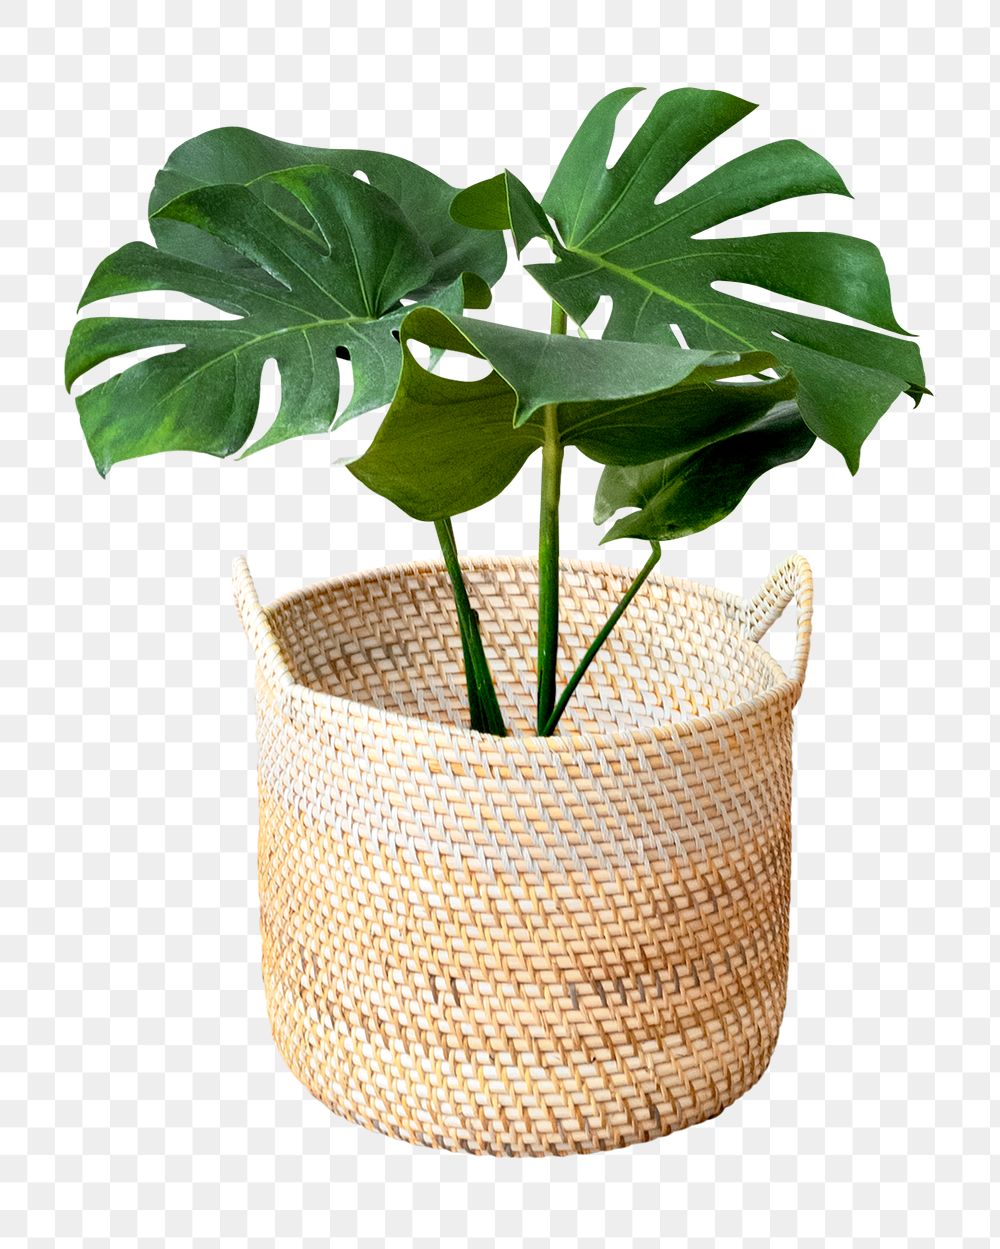 Monstera plant in a wicker pot mockup